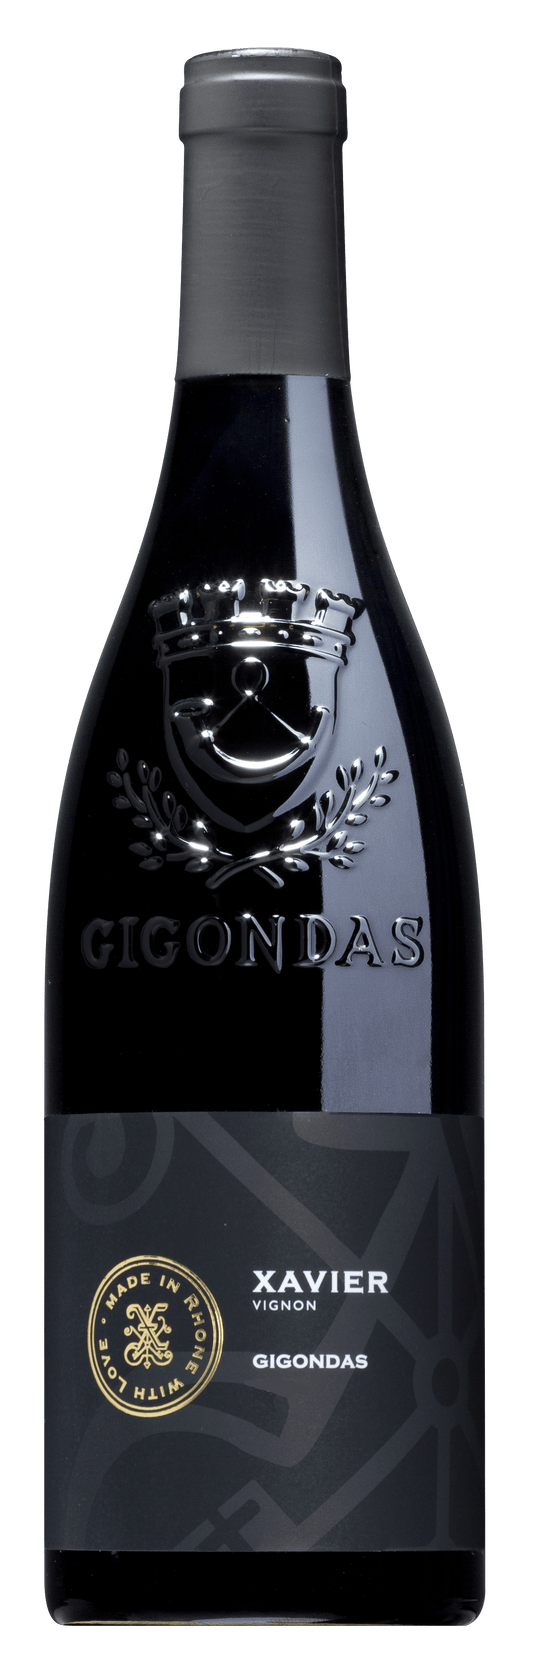 Gigondas 2019, Xavier Vignon (1x75cl) - TwoMoreGlasses.com